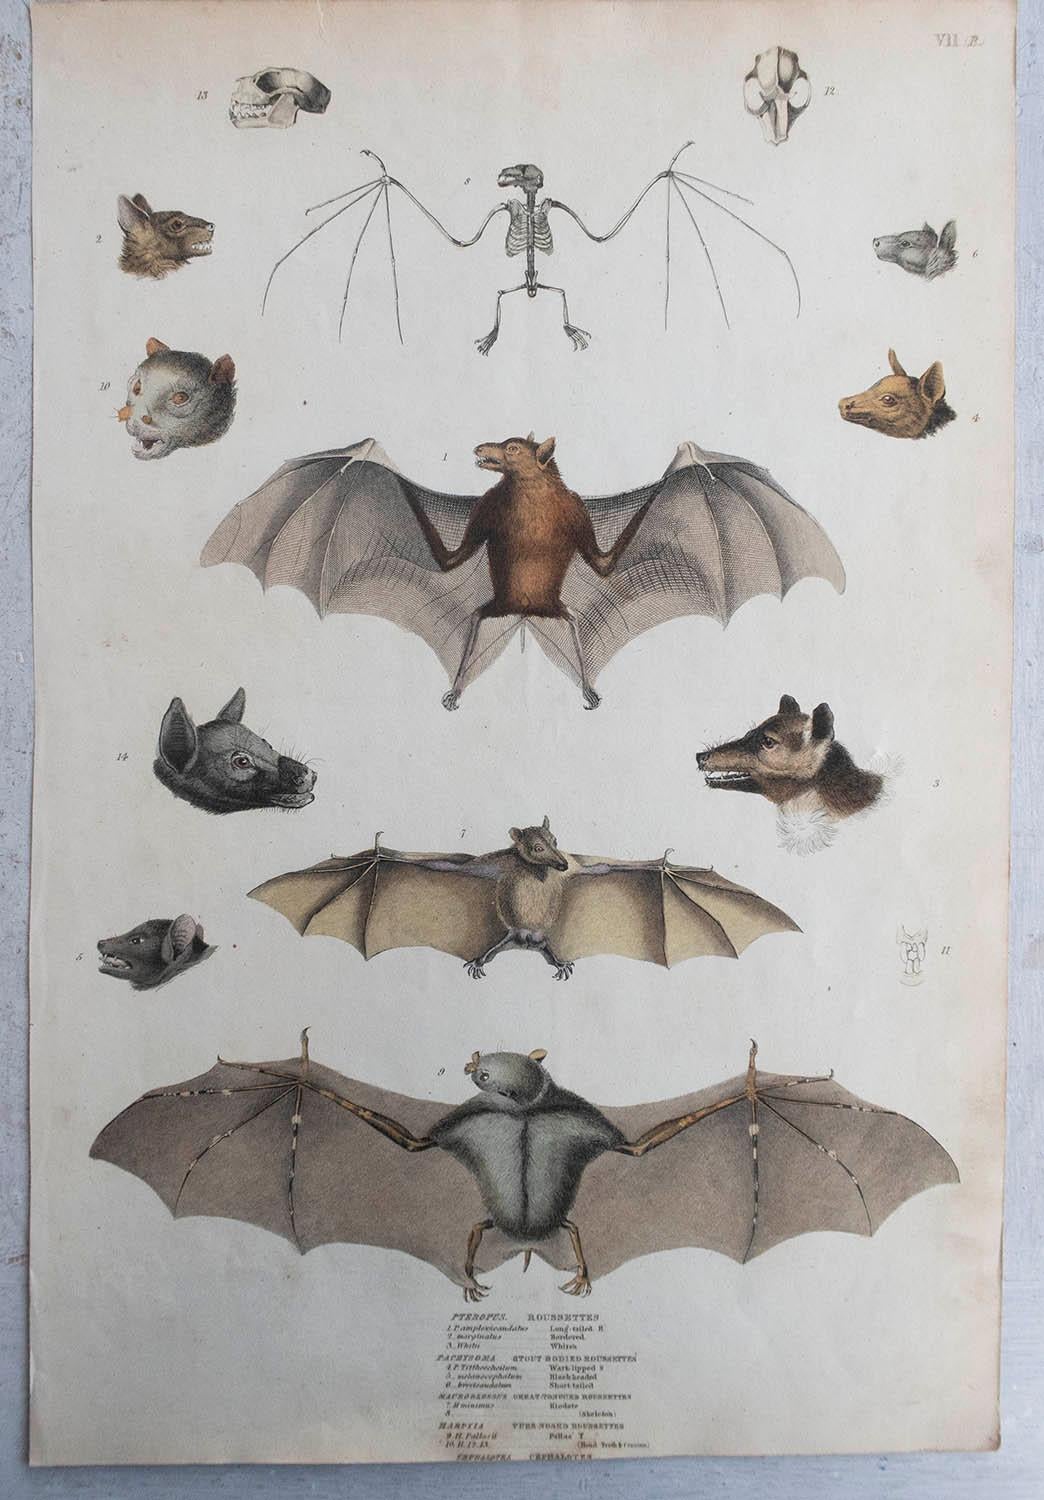 Folk Art Set of 4 Large Original Antique Natural History Prints, Bats, circa 1835